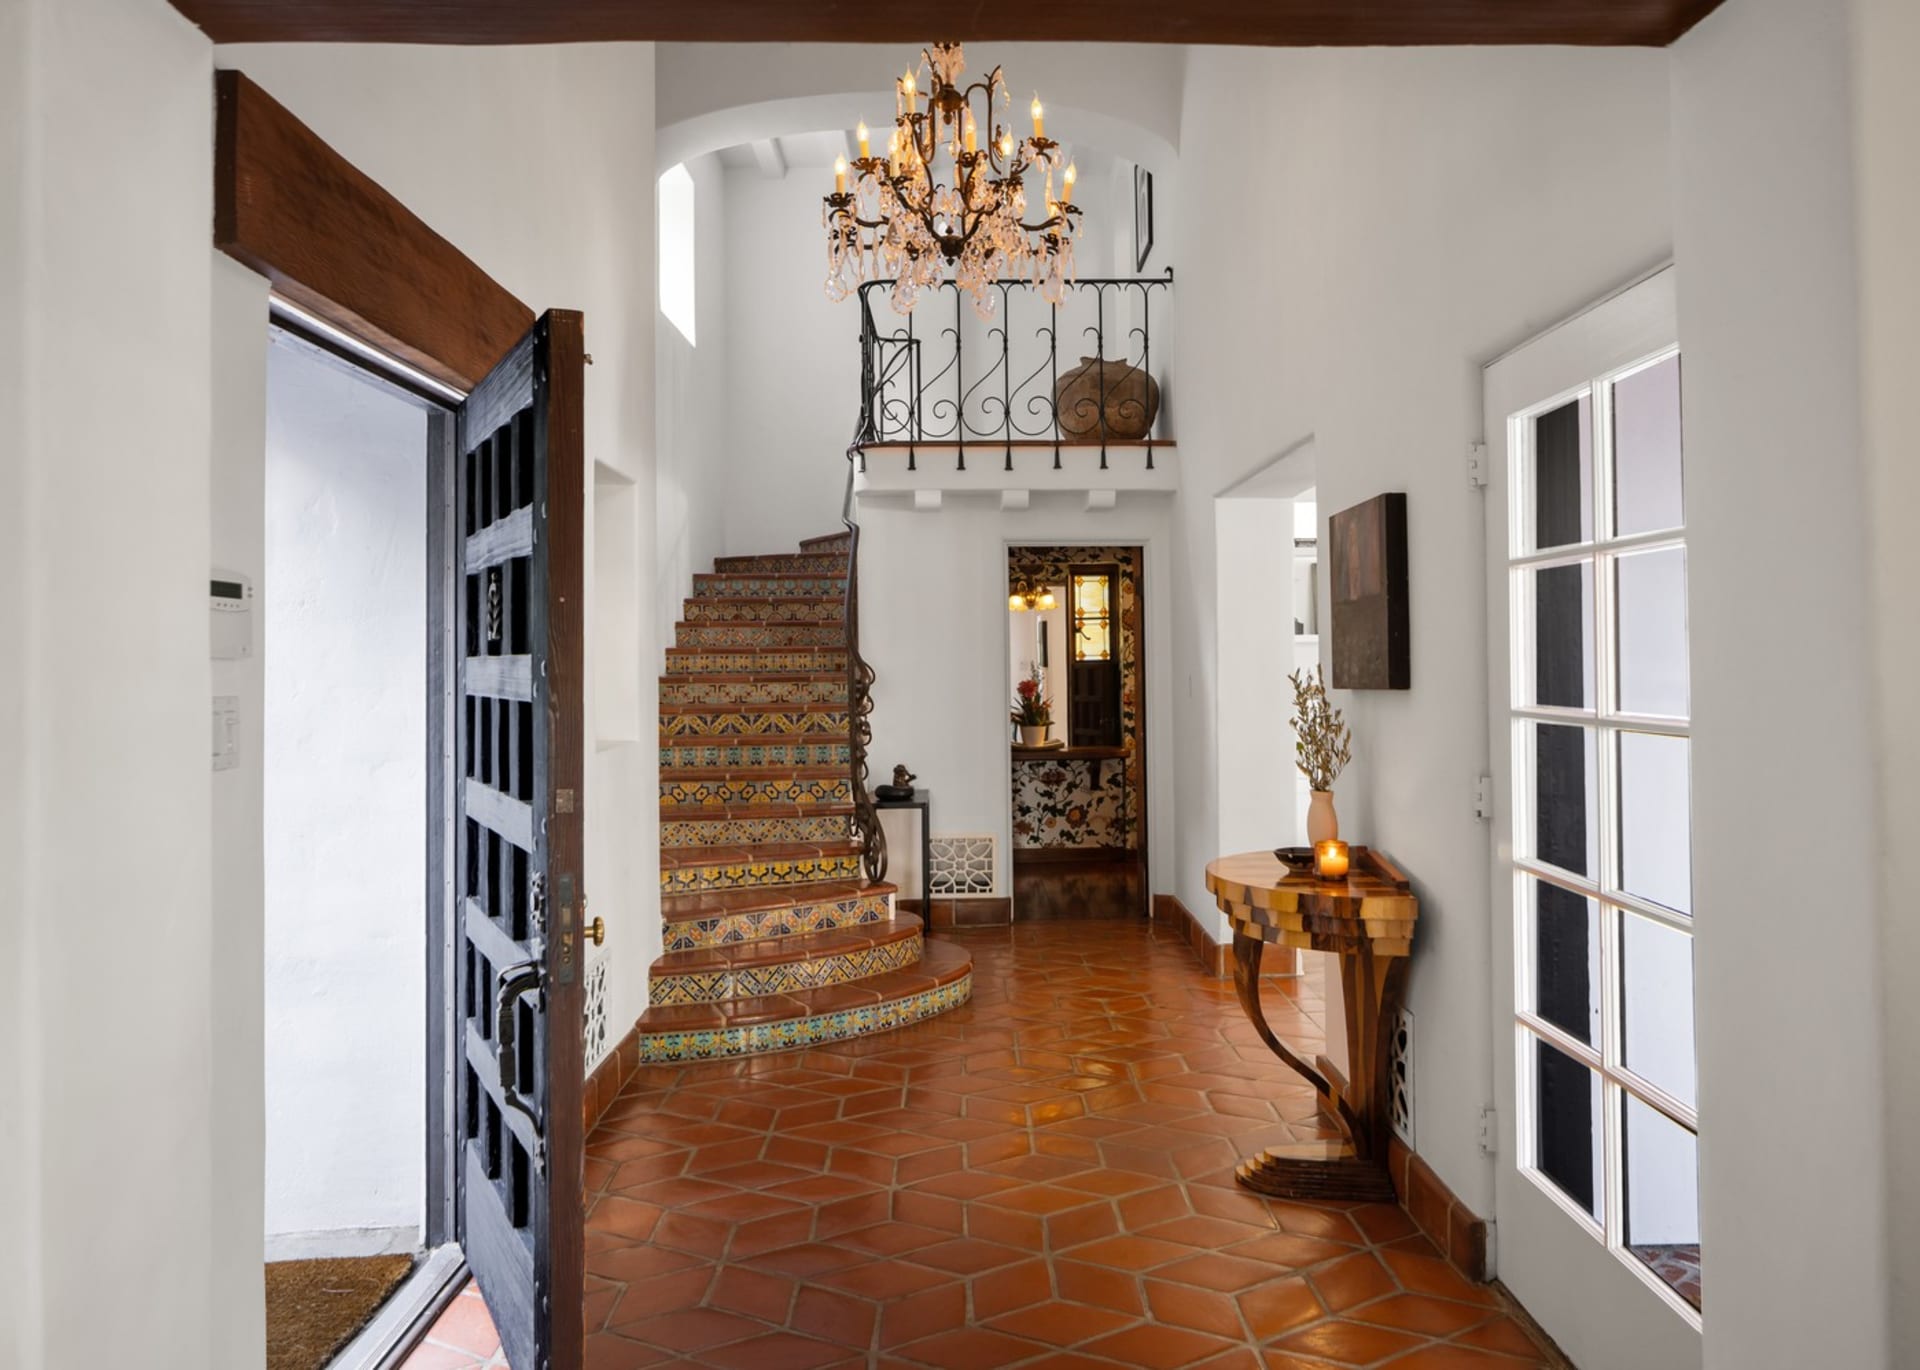 Bubeník skupiny Queen Roger Taylor prodal své kalifornské sídlo za 6 milionů dolarů: Vstupní foyer má zábradlí z tepaného železa a schody lemované barevnými mozaikovými dlaždicemi.